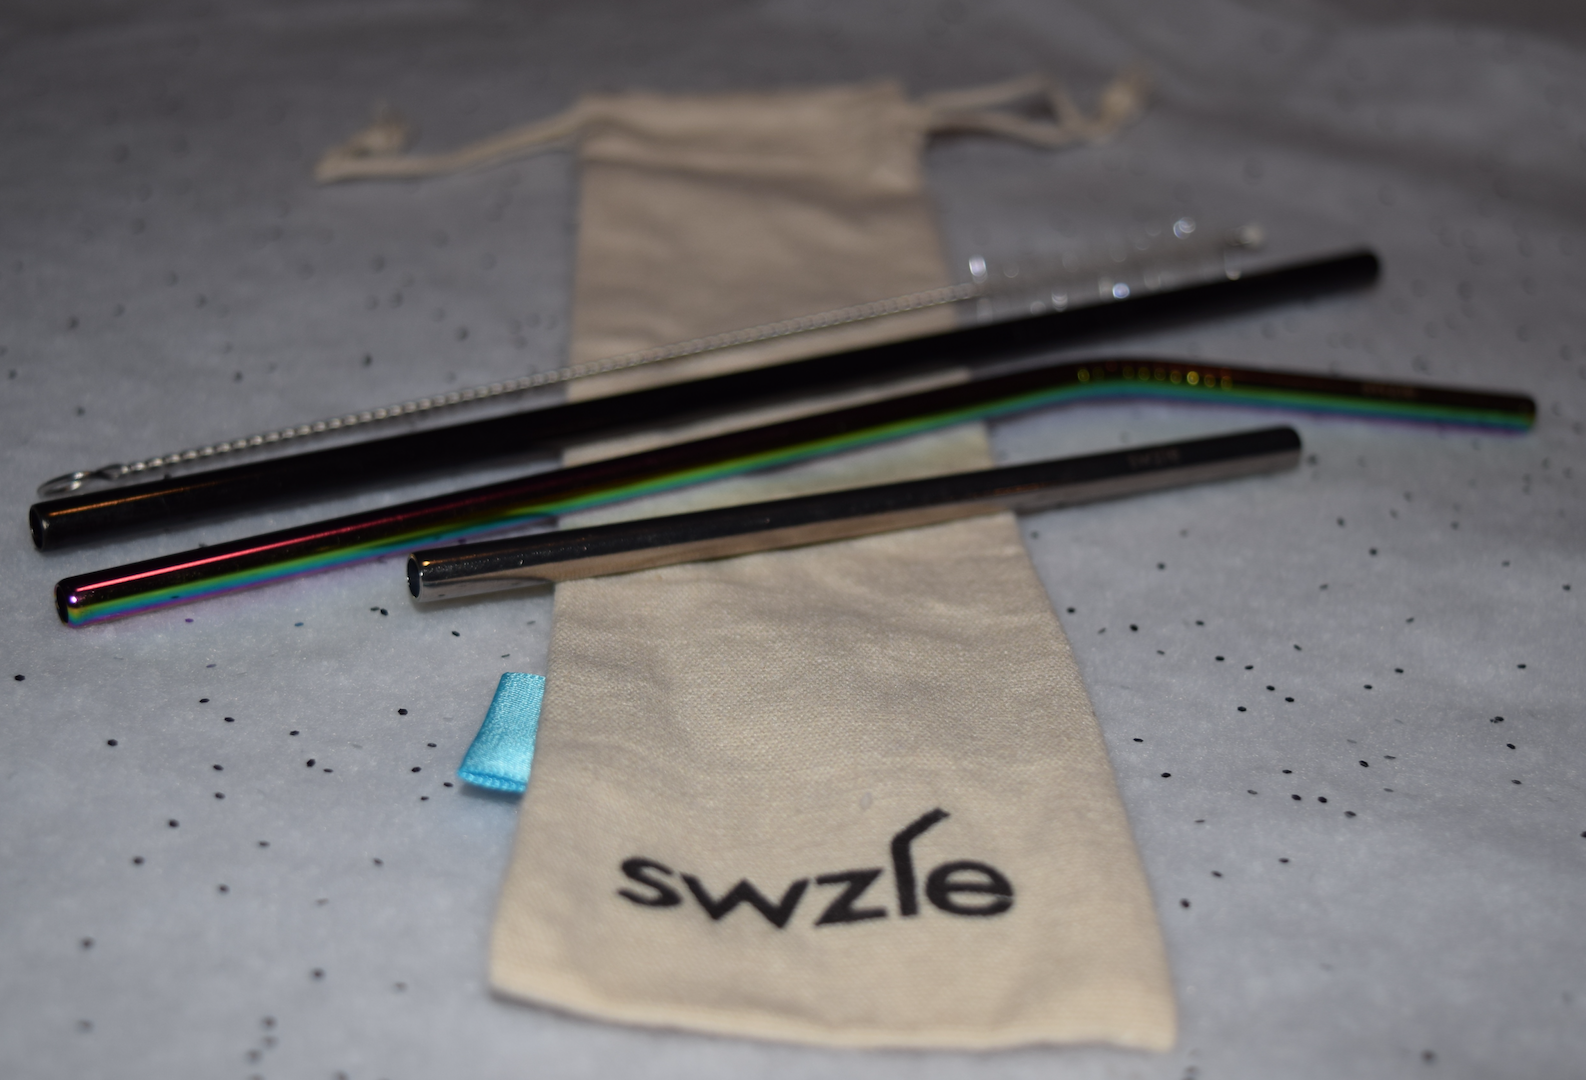 SWZLE Stainless Steel Drinking Straws - Purple (8 Pack)